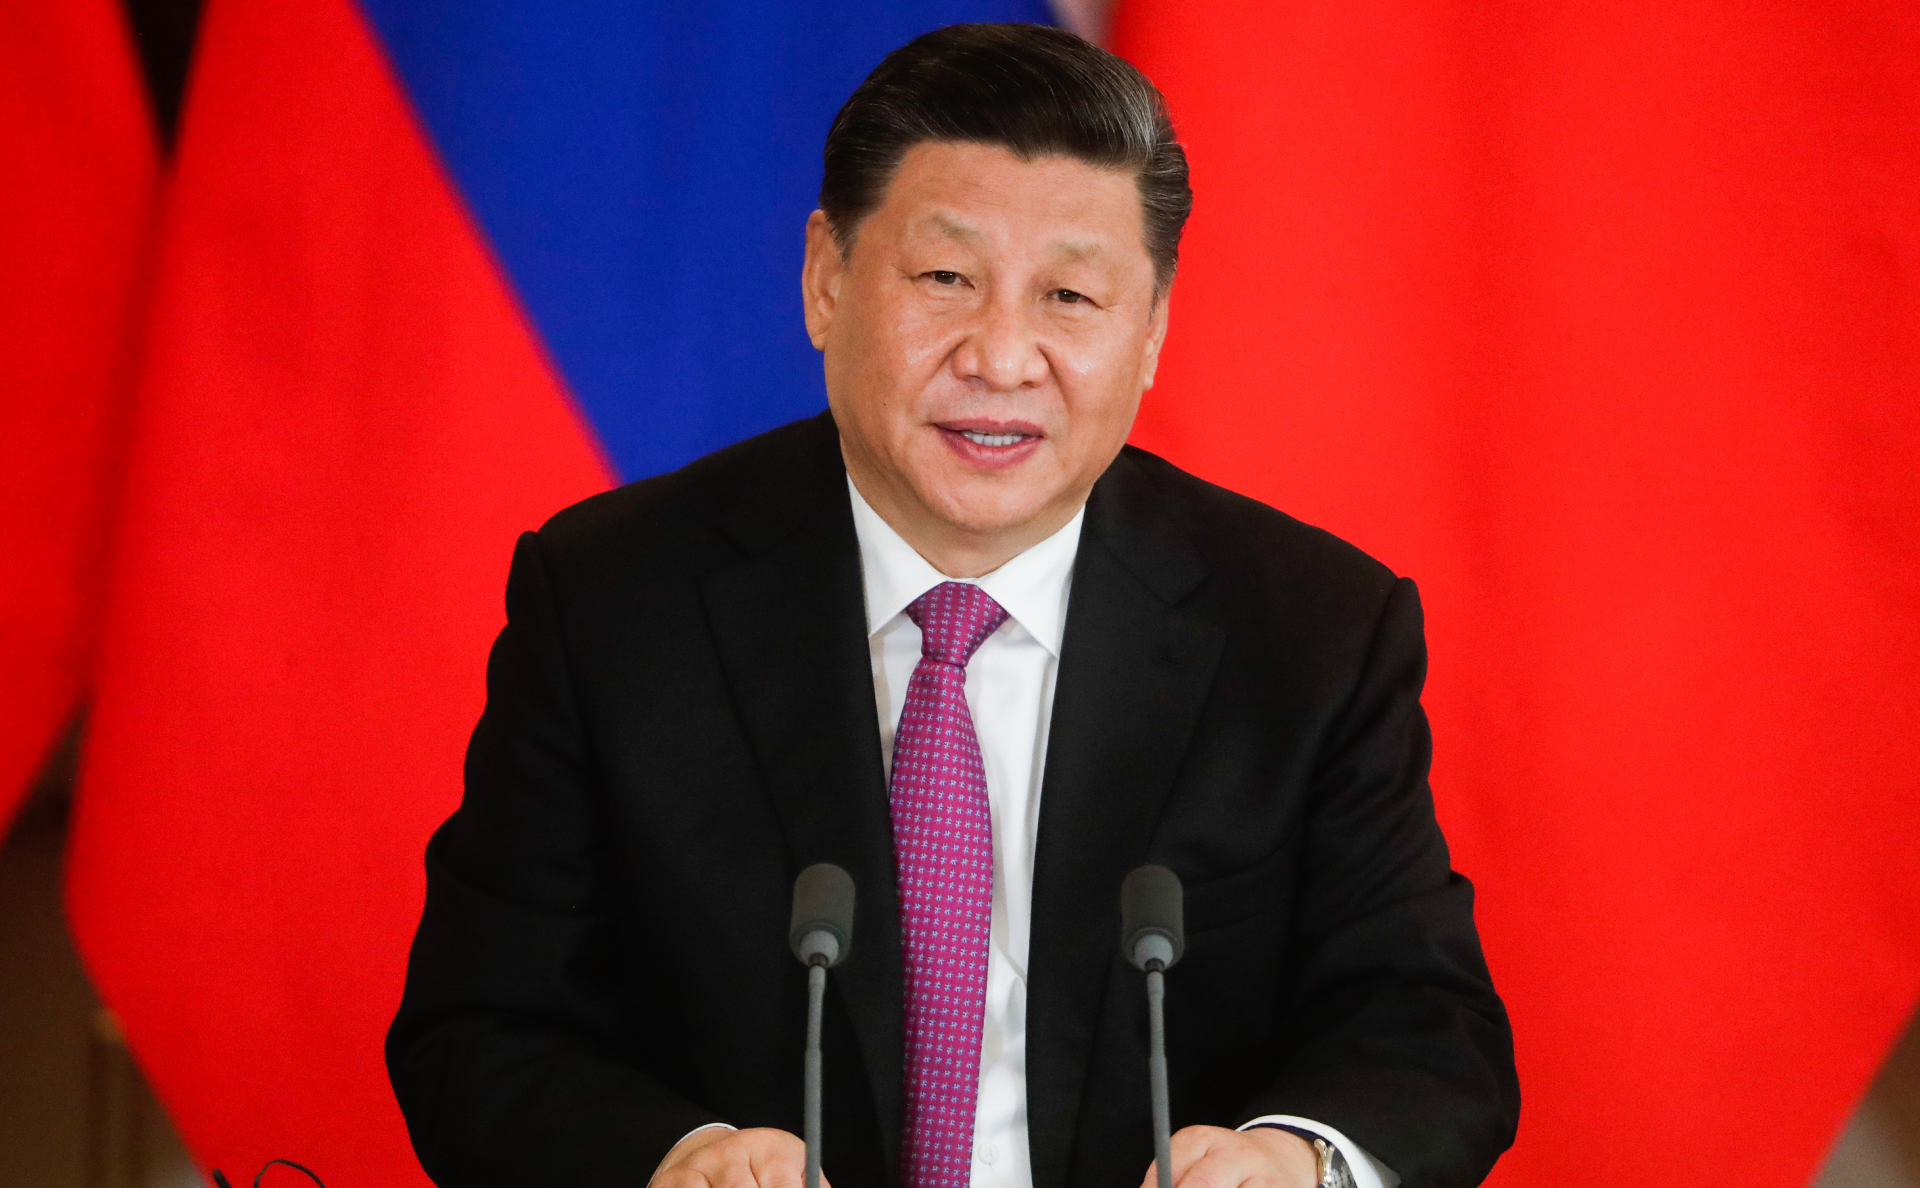 Си Цзиньпин выступил против односторонних санкций и двойных стандартов"/>













